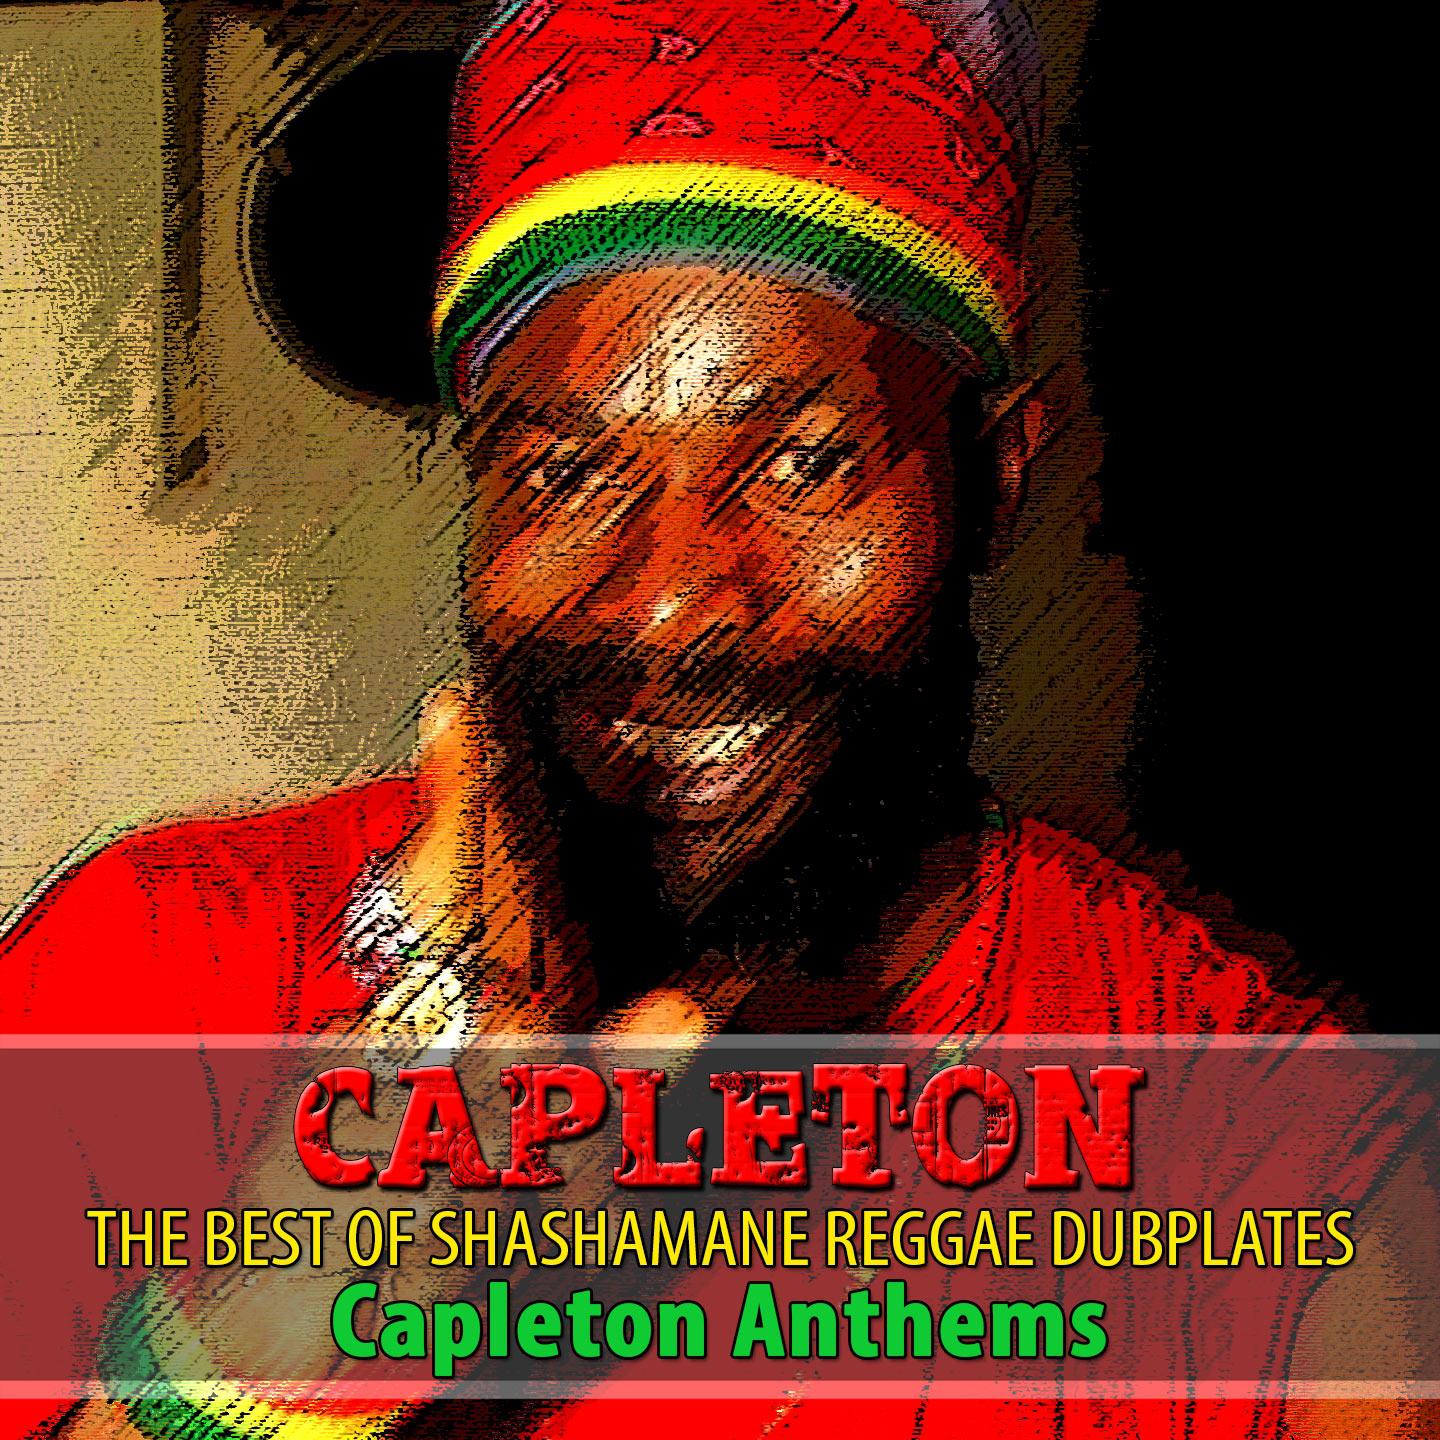 The Best of Shashamane Reggae Dubplates (Capleton Anthems)